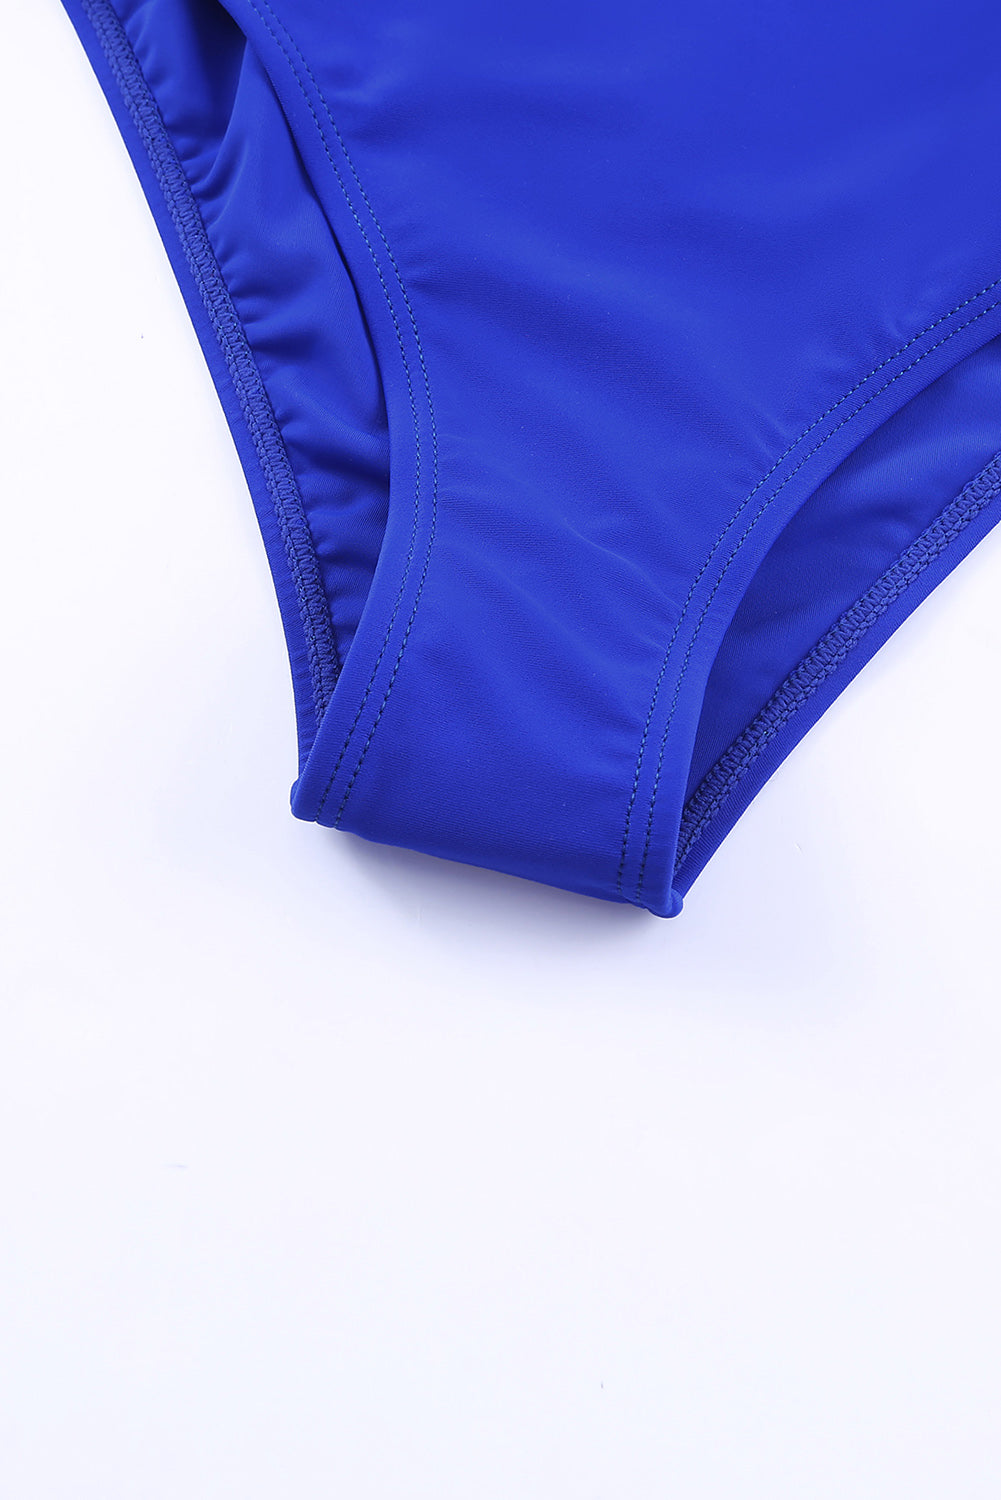 Blauer, einteiliger Badeanzug im Neckholder-Rock-Stil mit Trägern